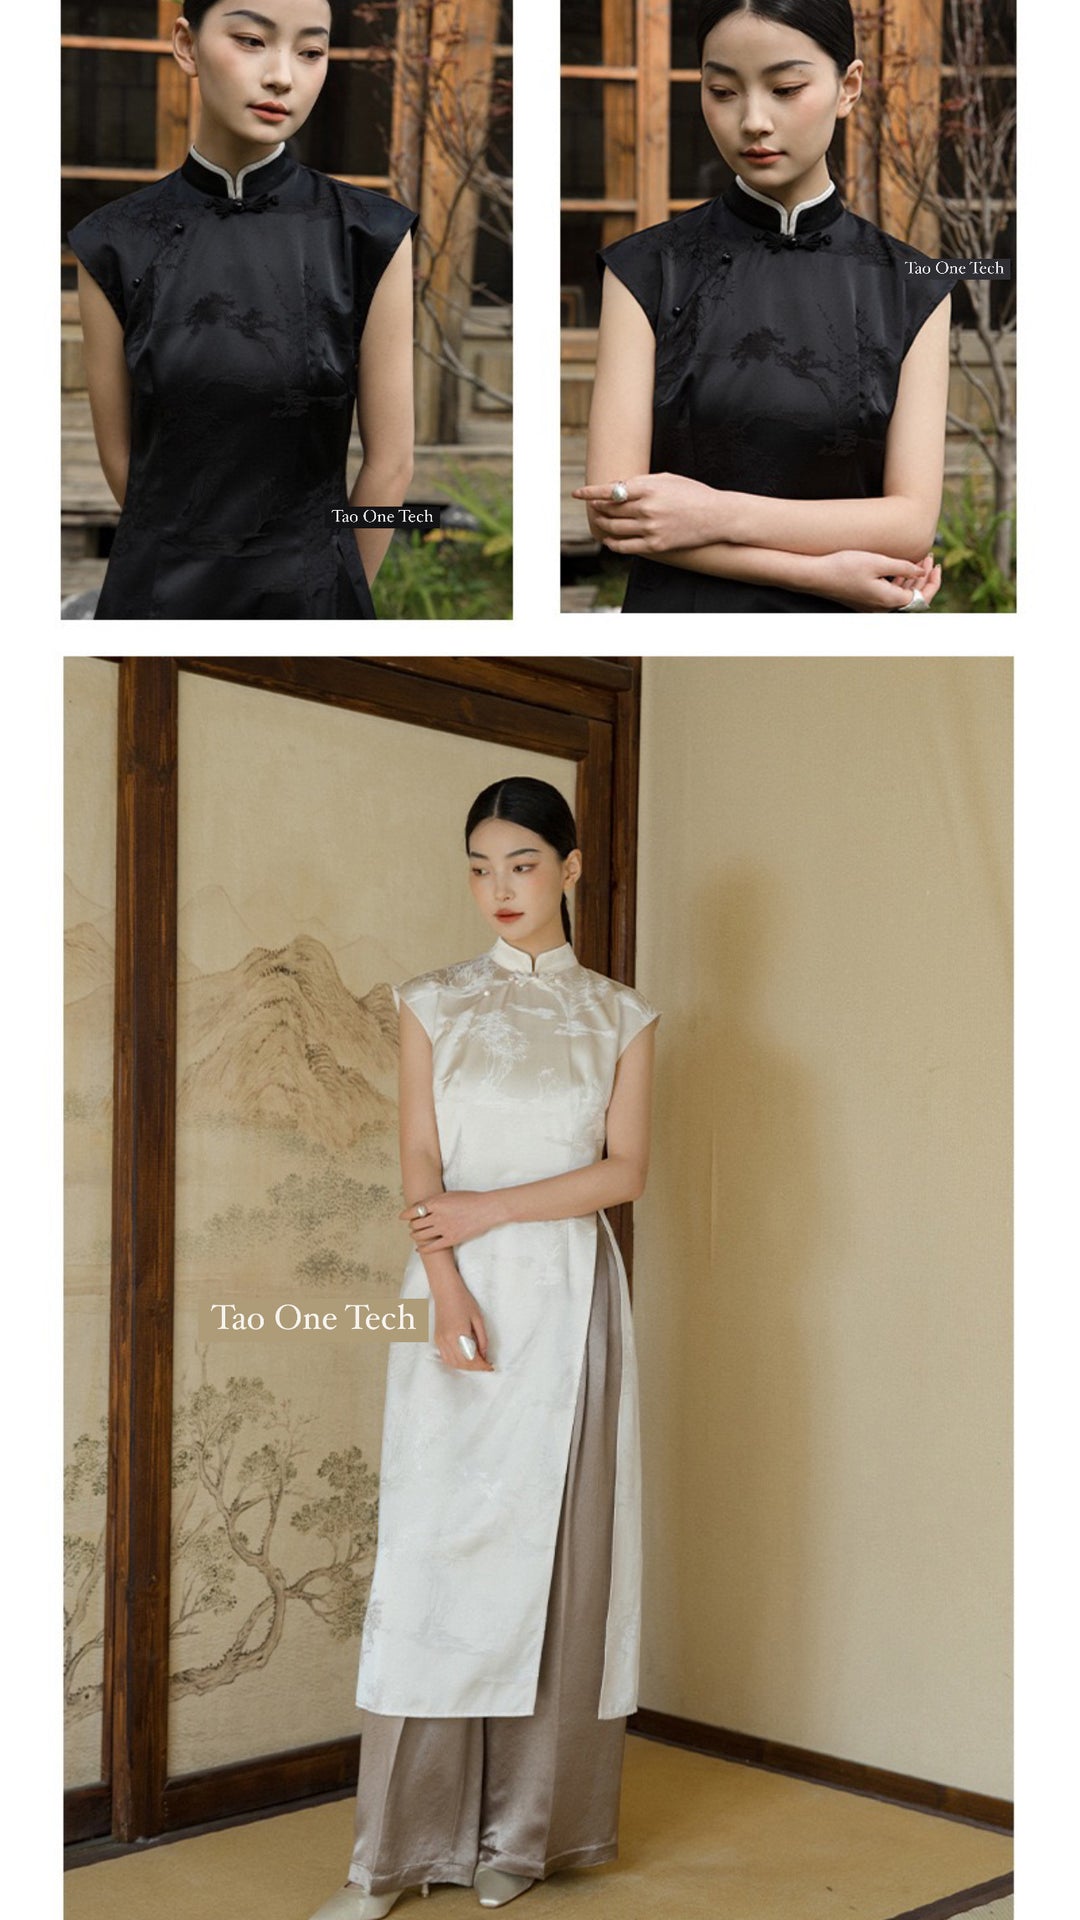 Tao One Tech™ • Long Cheongsam Shirt Dress • Silky Floral Jacquard • High Vibrational Art